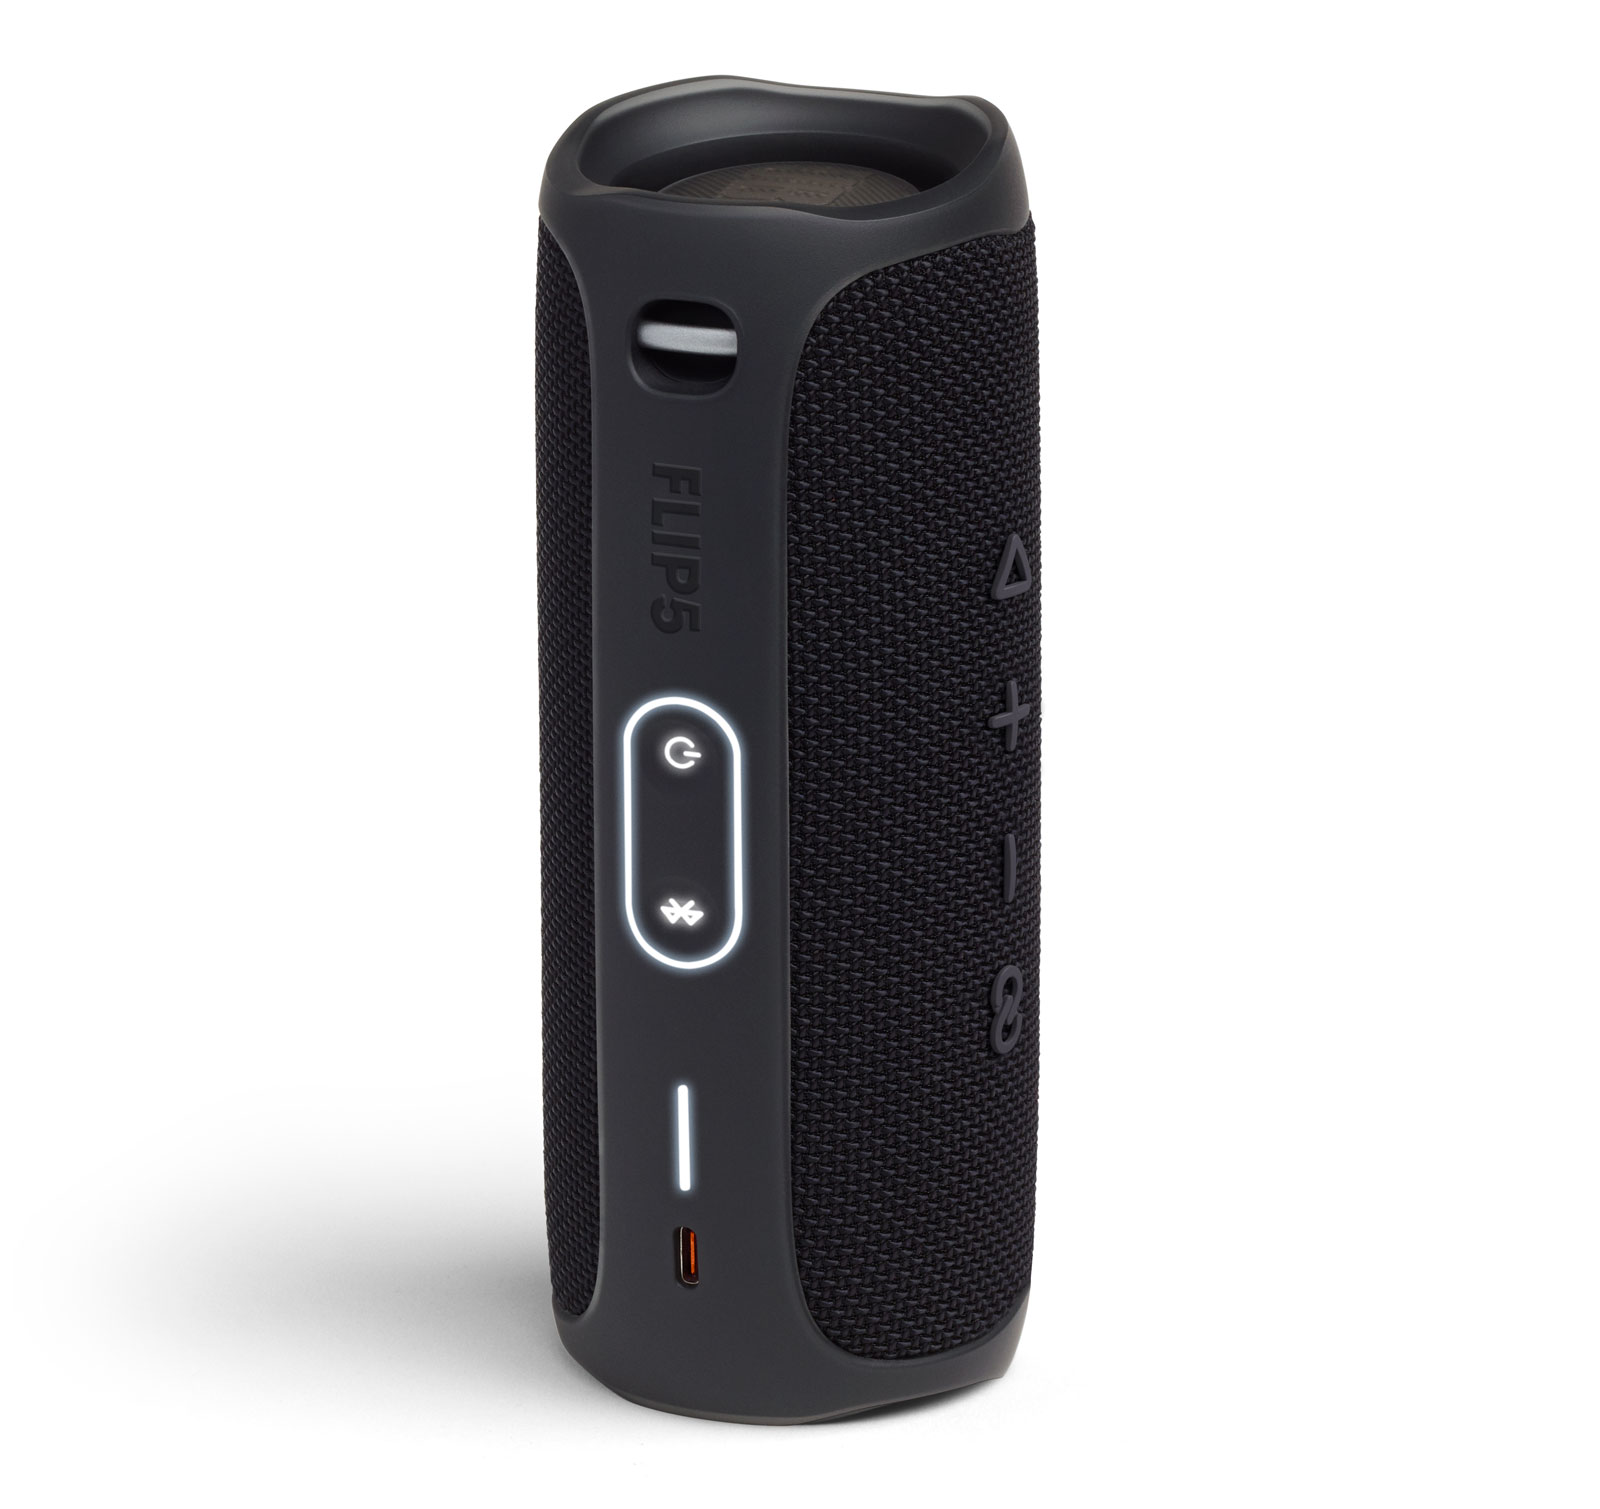 JBL Portable Bluetooth Speaker Pair with Waterproof, Black, JBLFLIP5BLKAM-PR - image 4 of 7